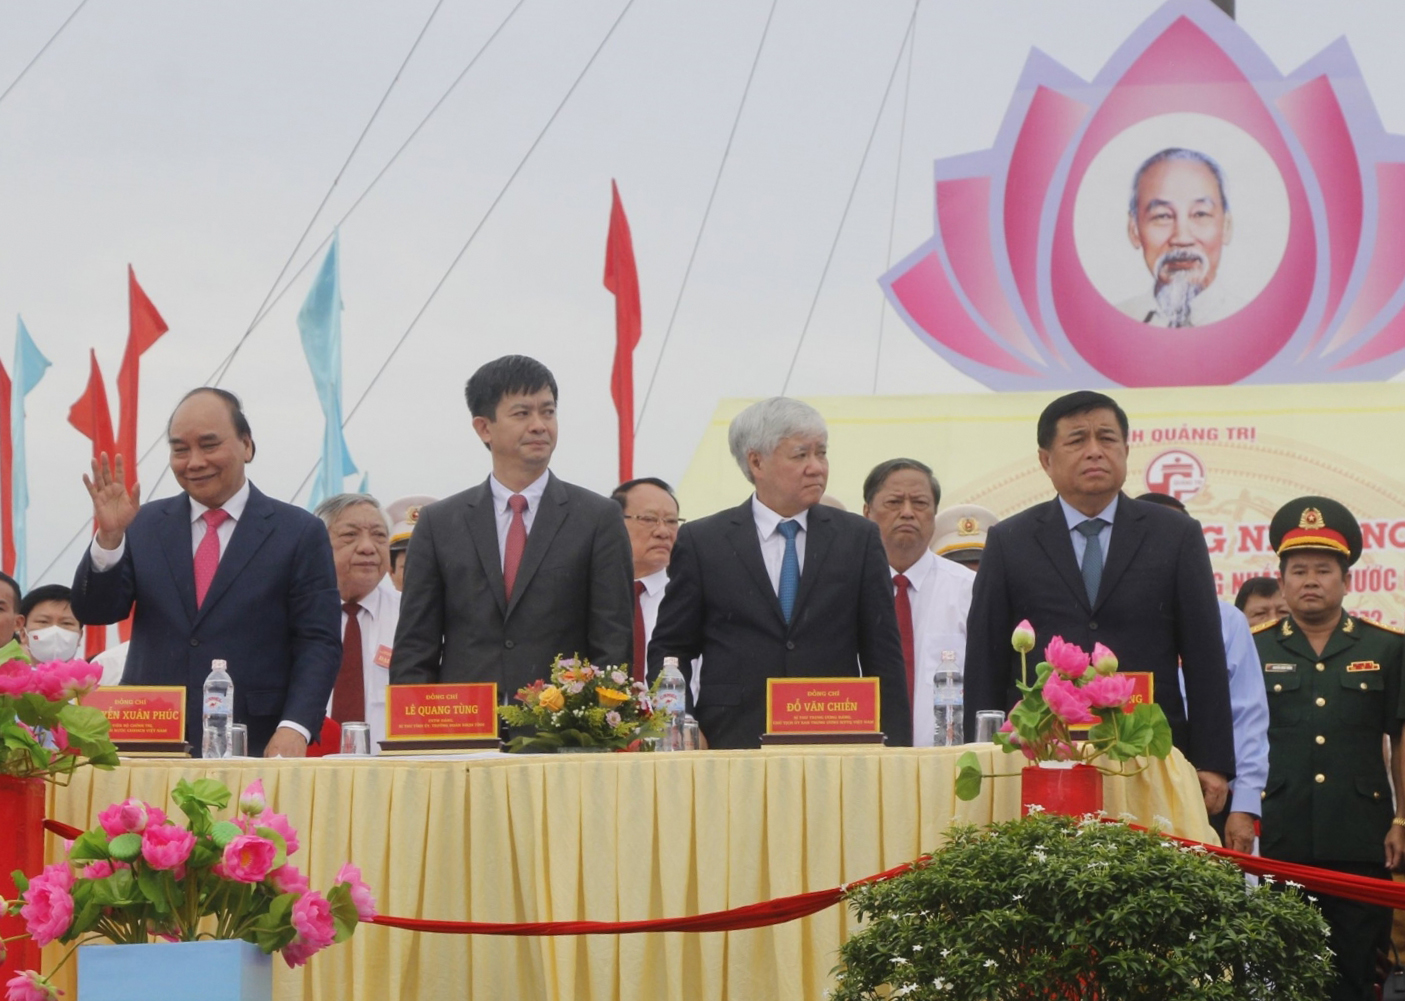 Chủ tịch nước Nguyễn Xuân Phúc cùng các đại biểu tại buổi lễ.